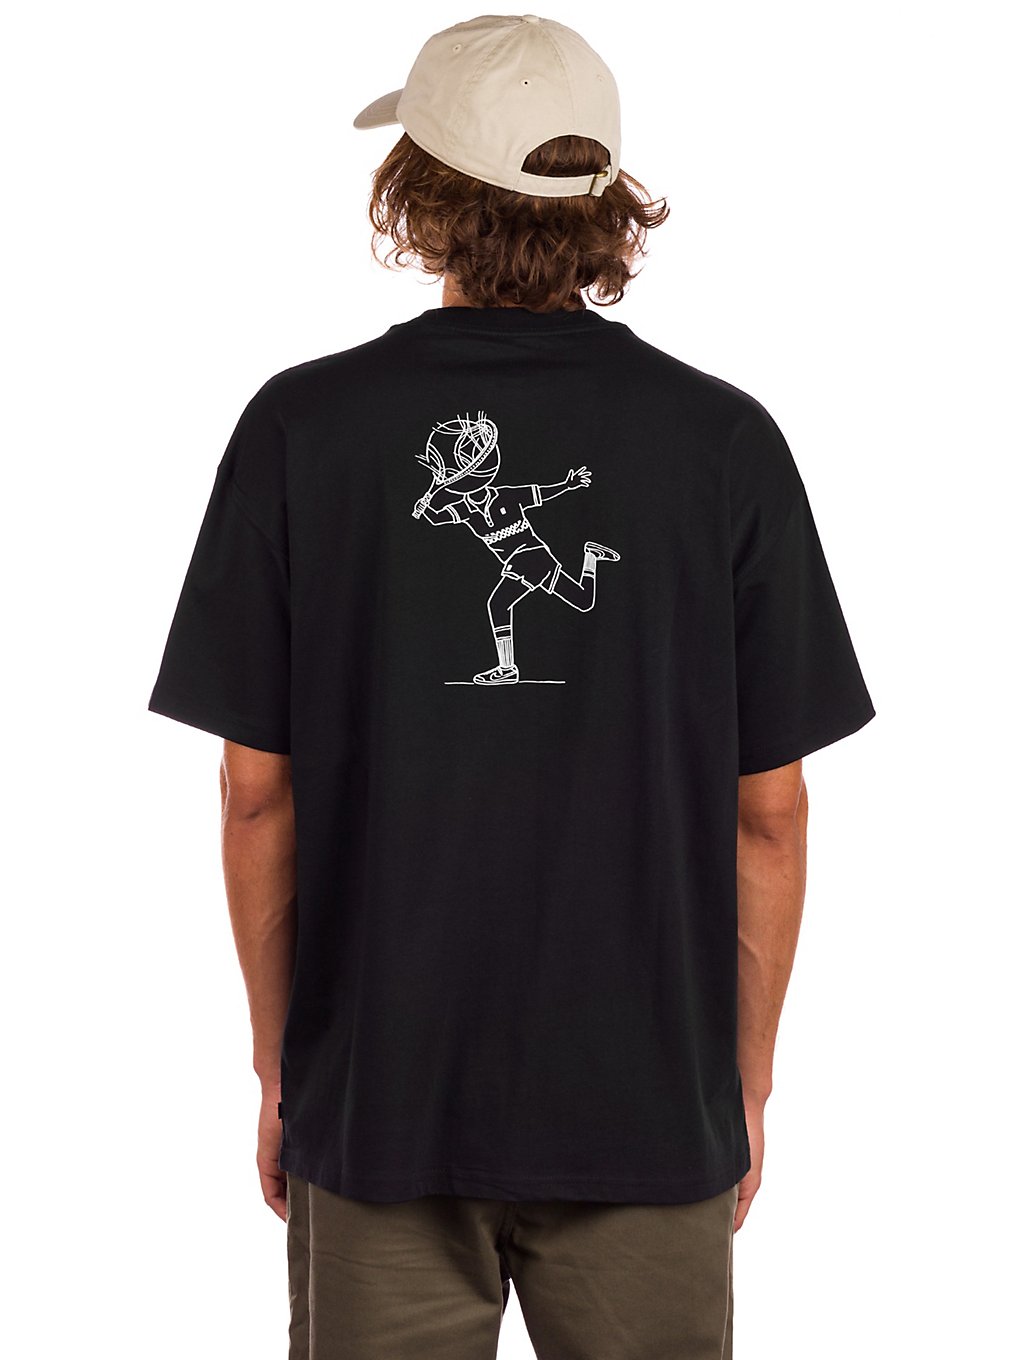 Nike Skate T-Shirt black